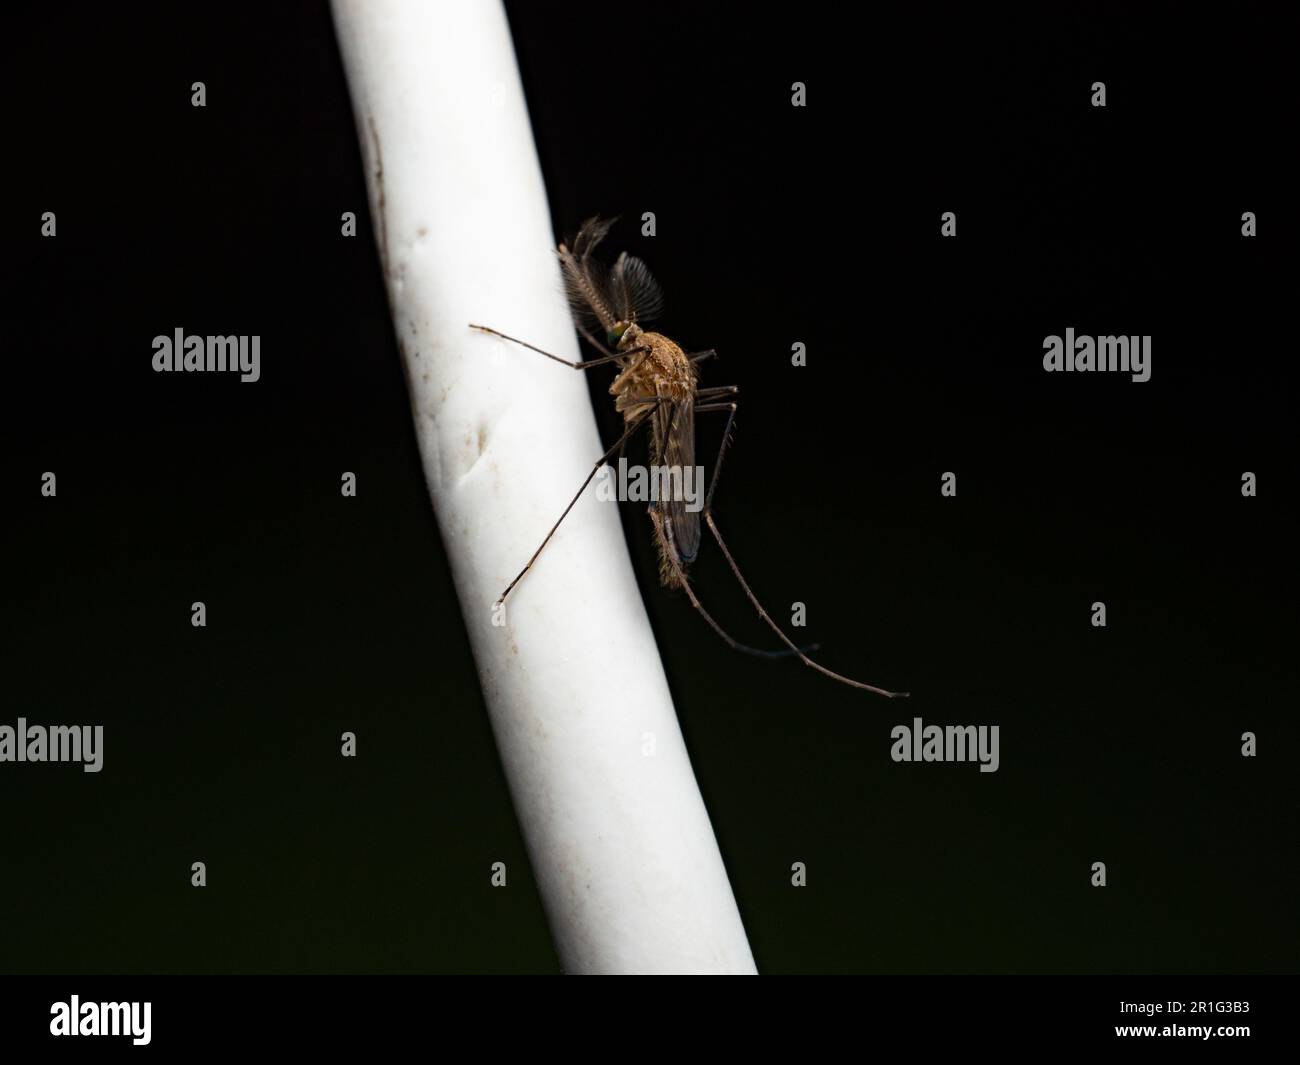 Gros plan d'un moustique qui perche sur un câble blanc. Capturé sur fond noir. Banque D'Images